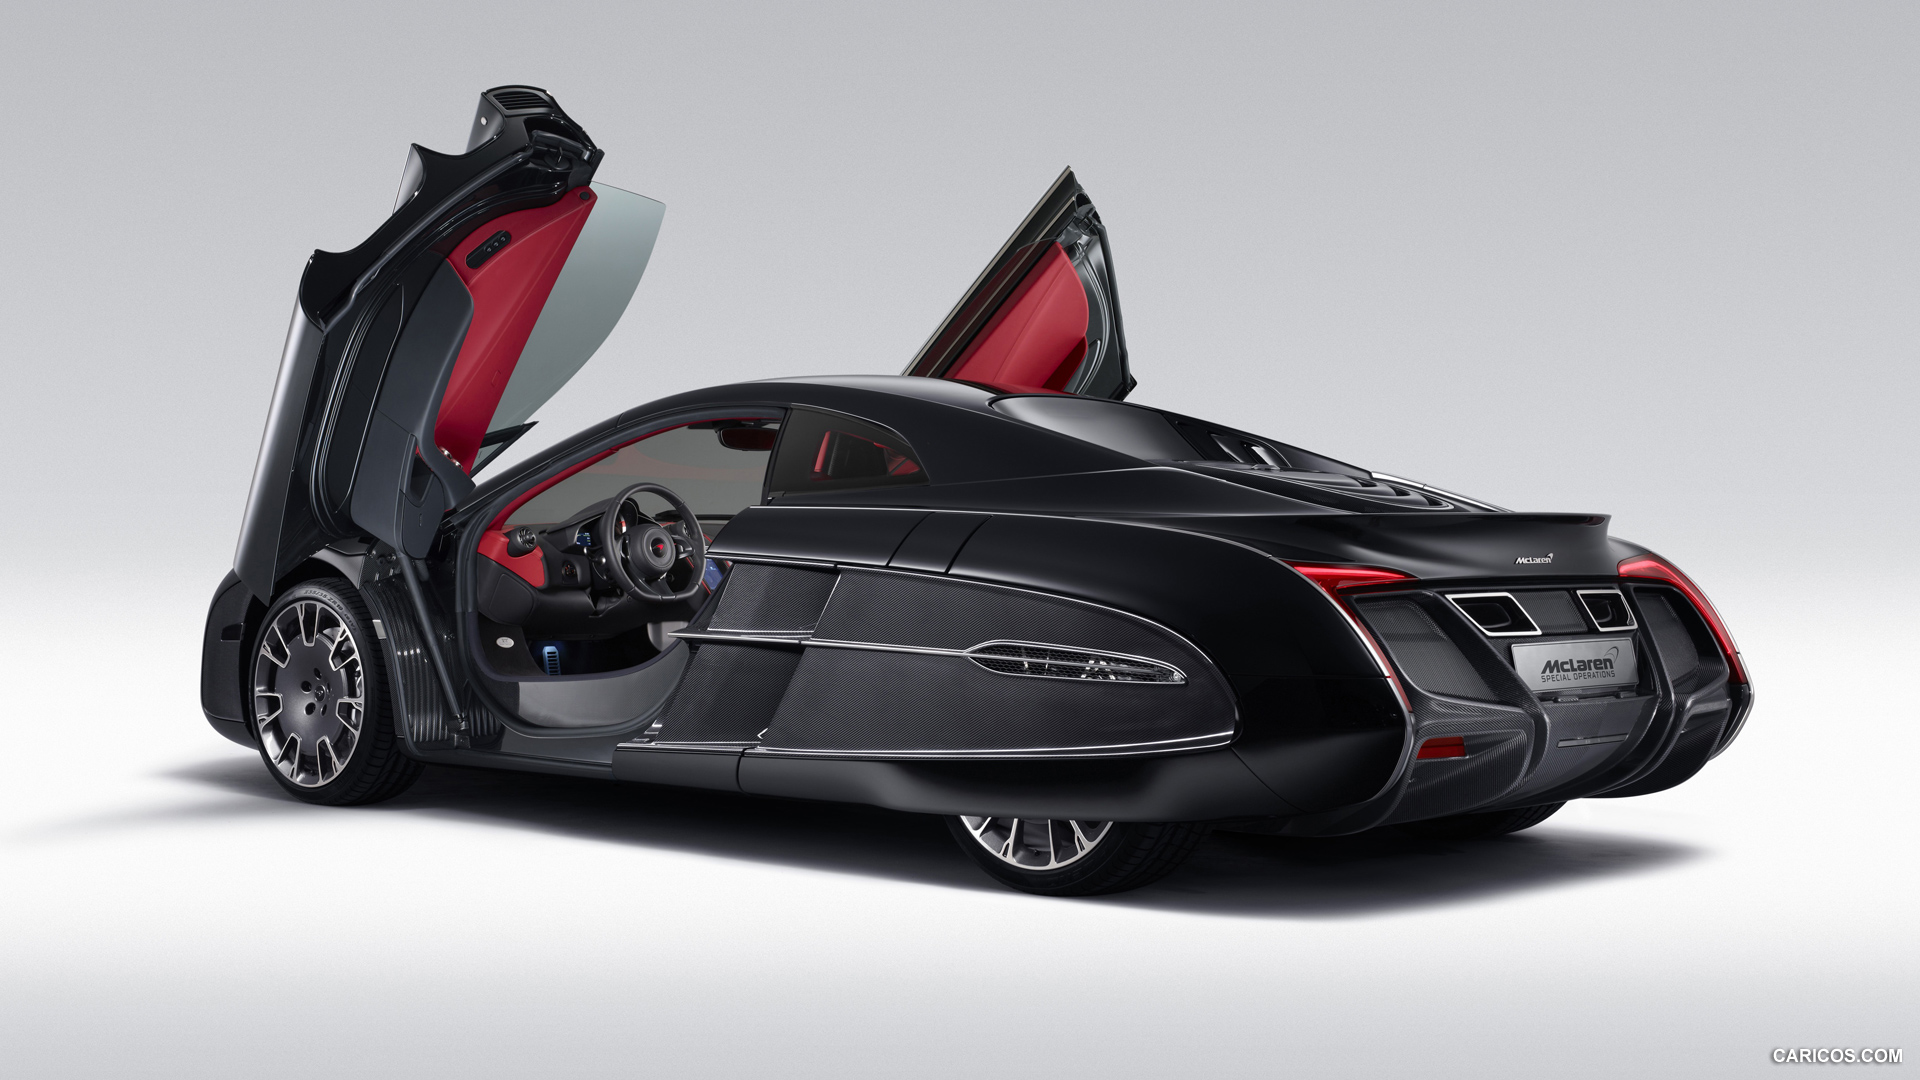 2012 McLaren X-1 Concept - Doors Open - Rear, #1 of 12